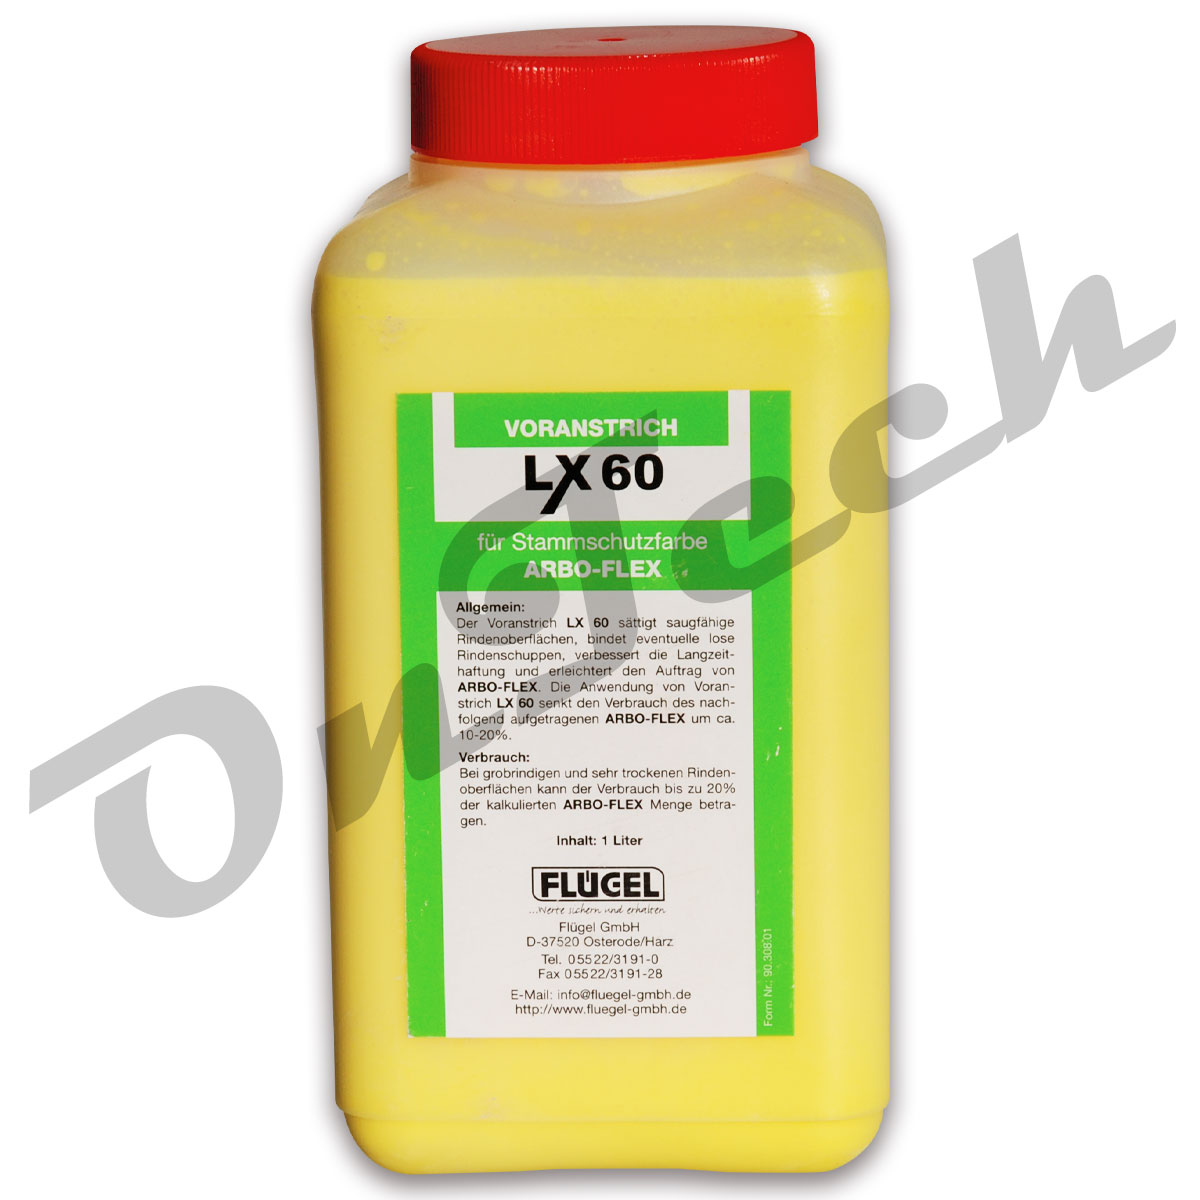 ARBO-FLEX Voranstrich "LX 60" 1Liter für Stammschutzfarbe ARBO-FLEX